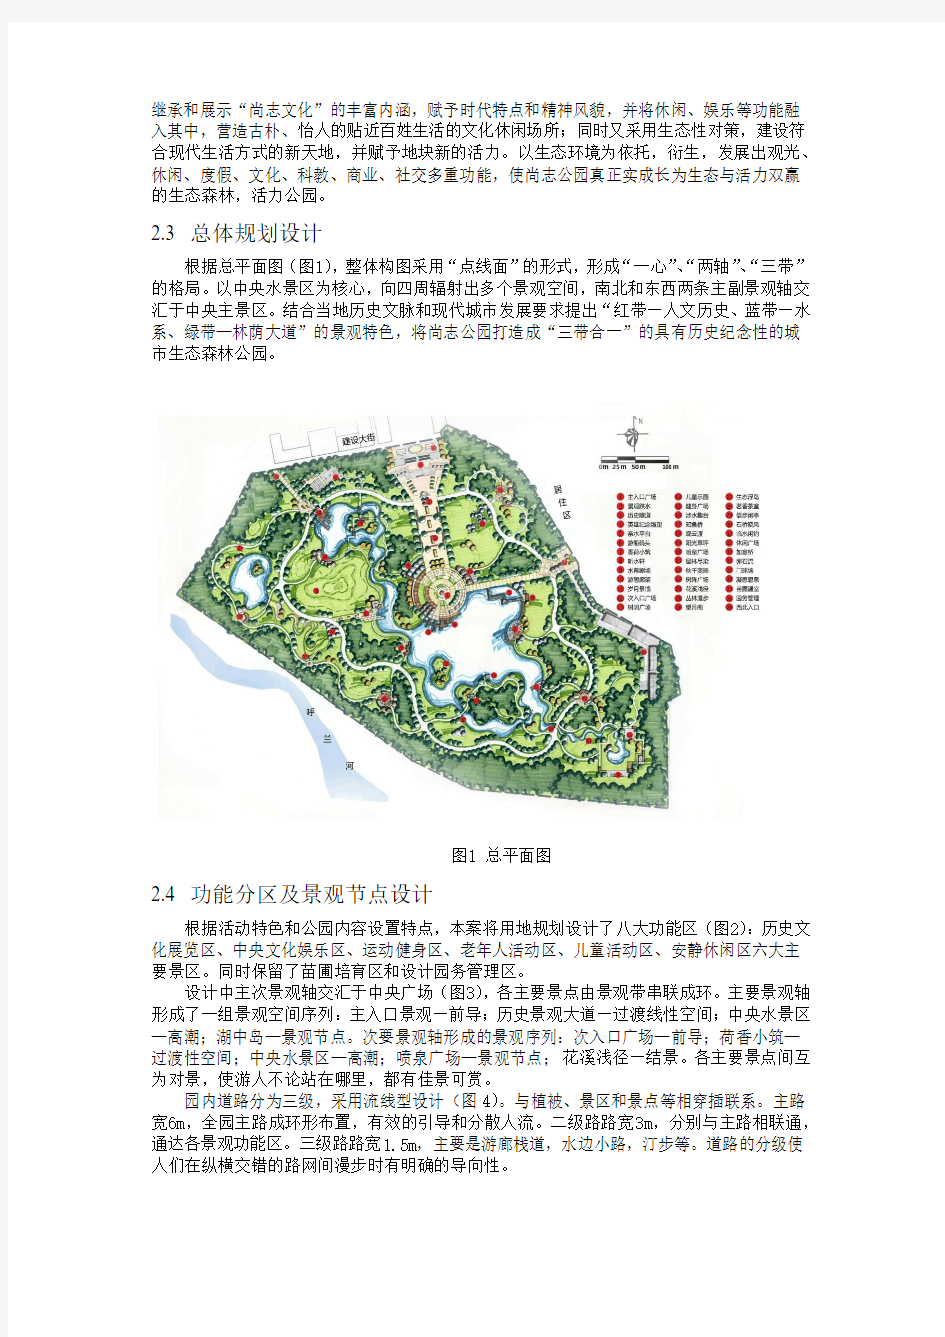 铁力市尚志公园景观规划设计方案一